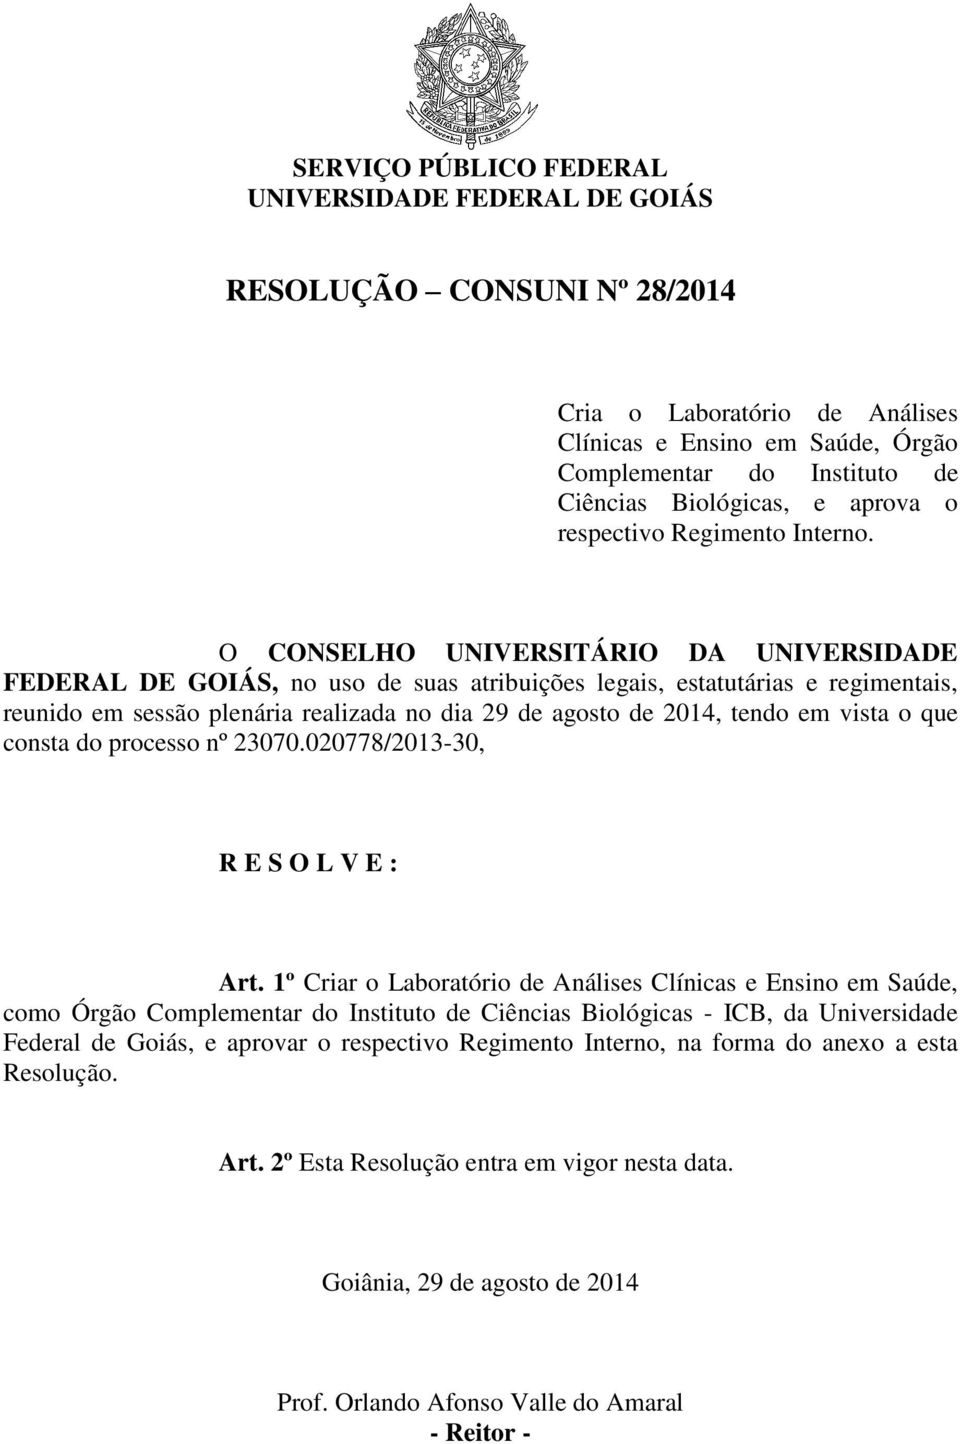 O CONSELHO UNIVERSITÁRIO DA UNIVERSIDADE FEDERAL DE GOIÁS, no uso de suas atribuições legais, estatutárias e regimentais, reunido em sessão plenária realizada no dia 29 de agosto de 2014, tendo em